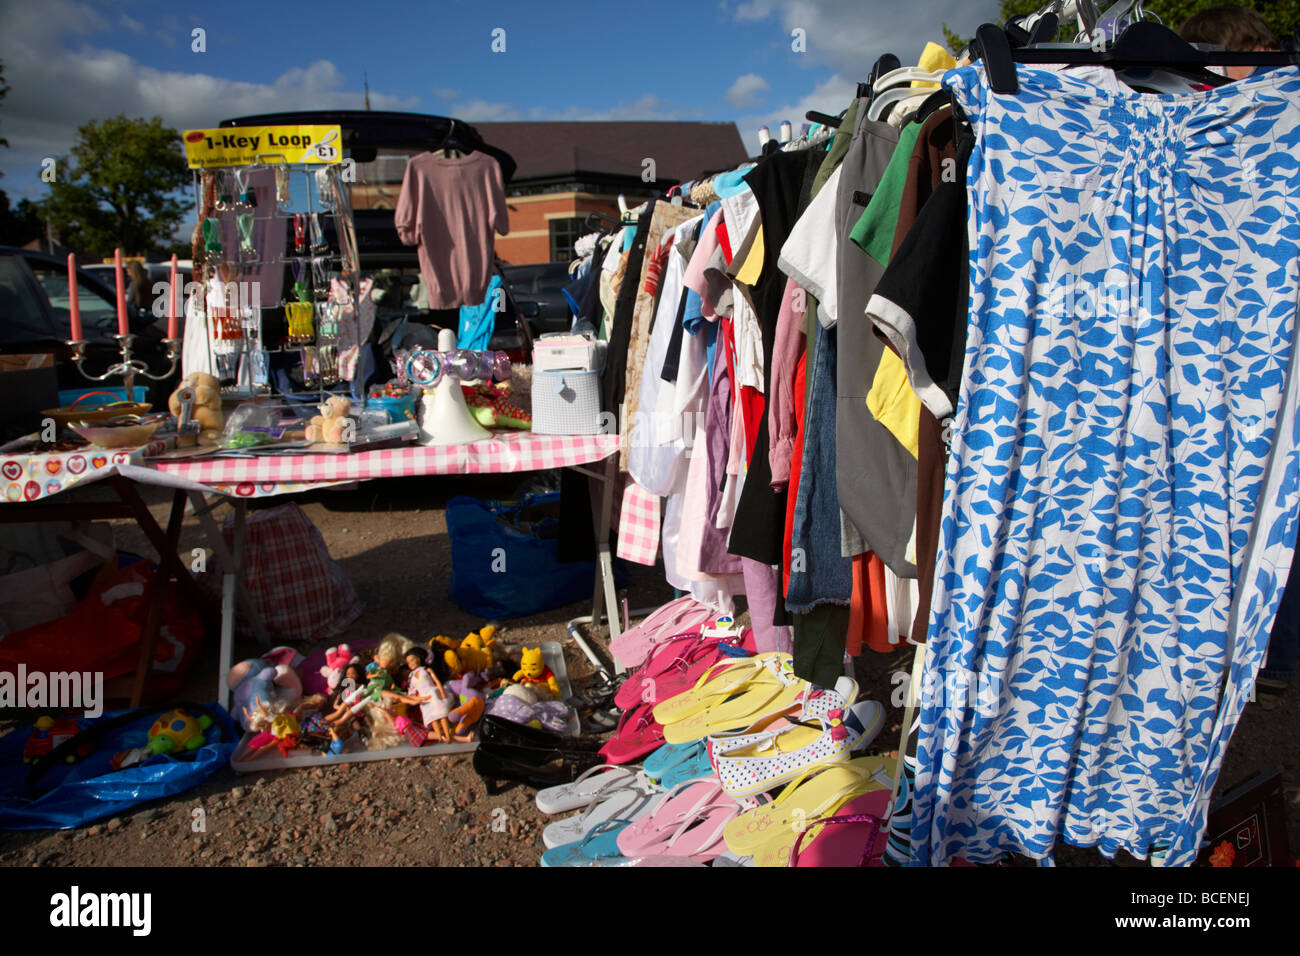 Schiene Des 2 Hand Damen Kleidung Zum Verkauf Auf Einem Flohmarkt In Herzinfarkt Nordirland Vereinigtes Konigreich Stockfotografie Alamy